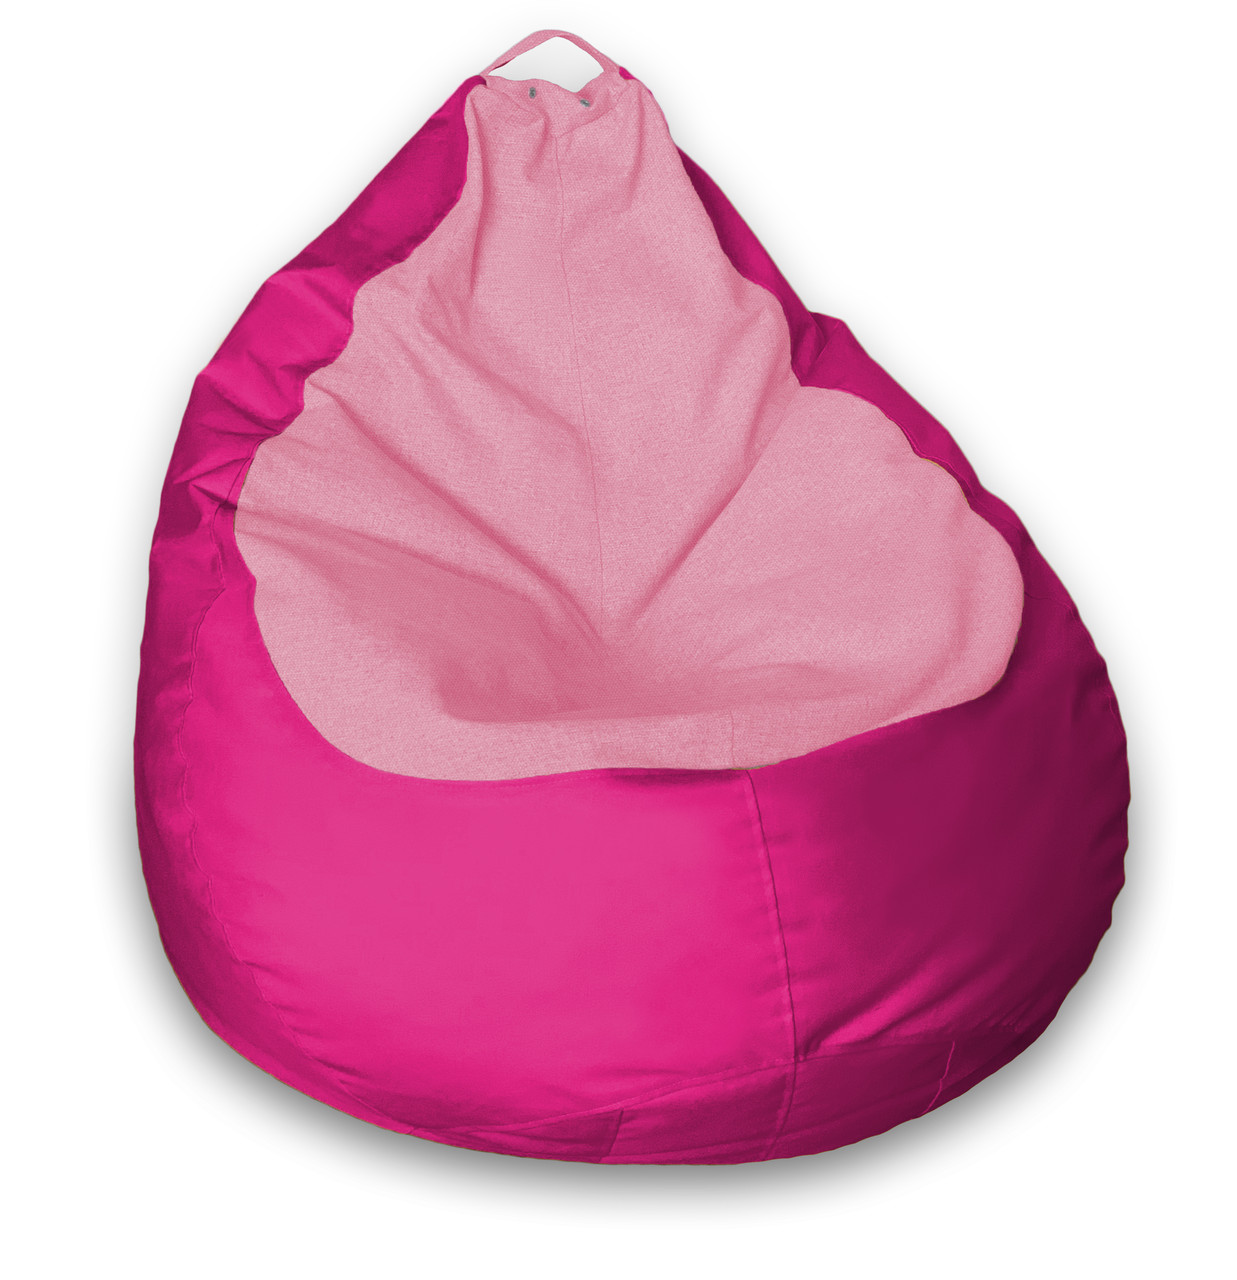 

Кресло Мешок Пуфик Груша Премиум Средний размер Малиновый + Розовый